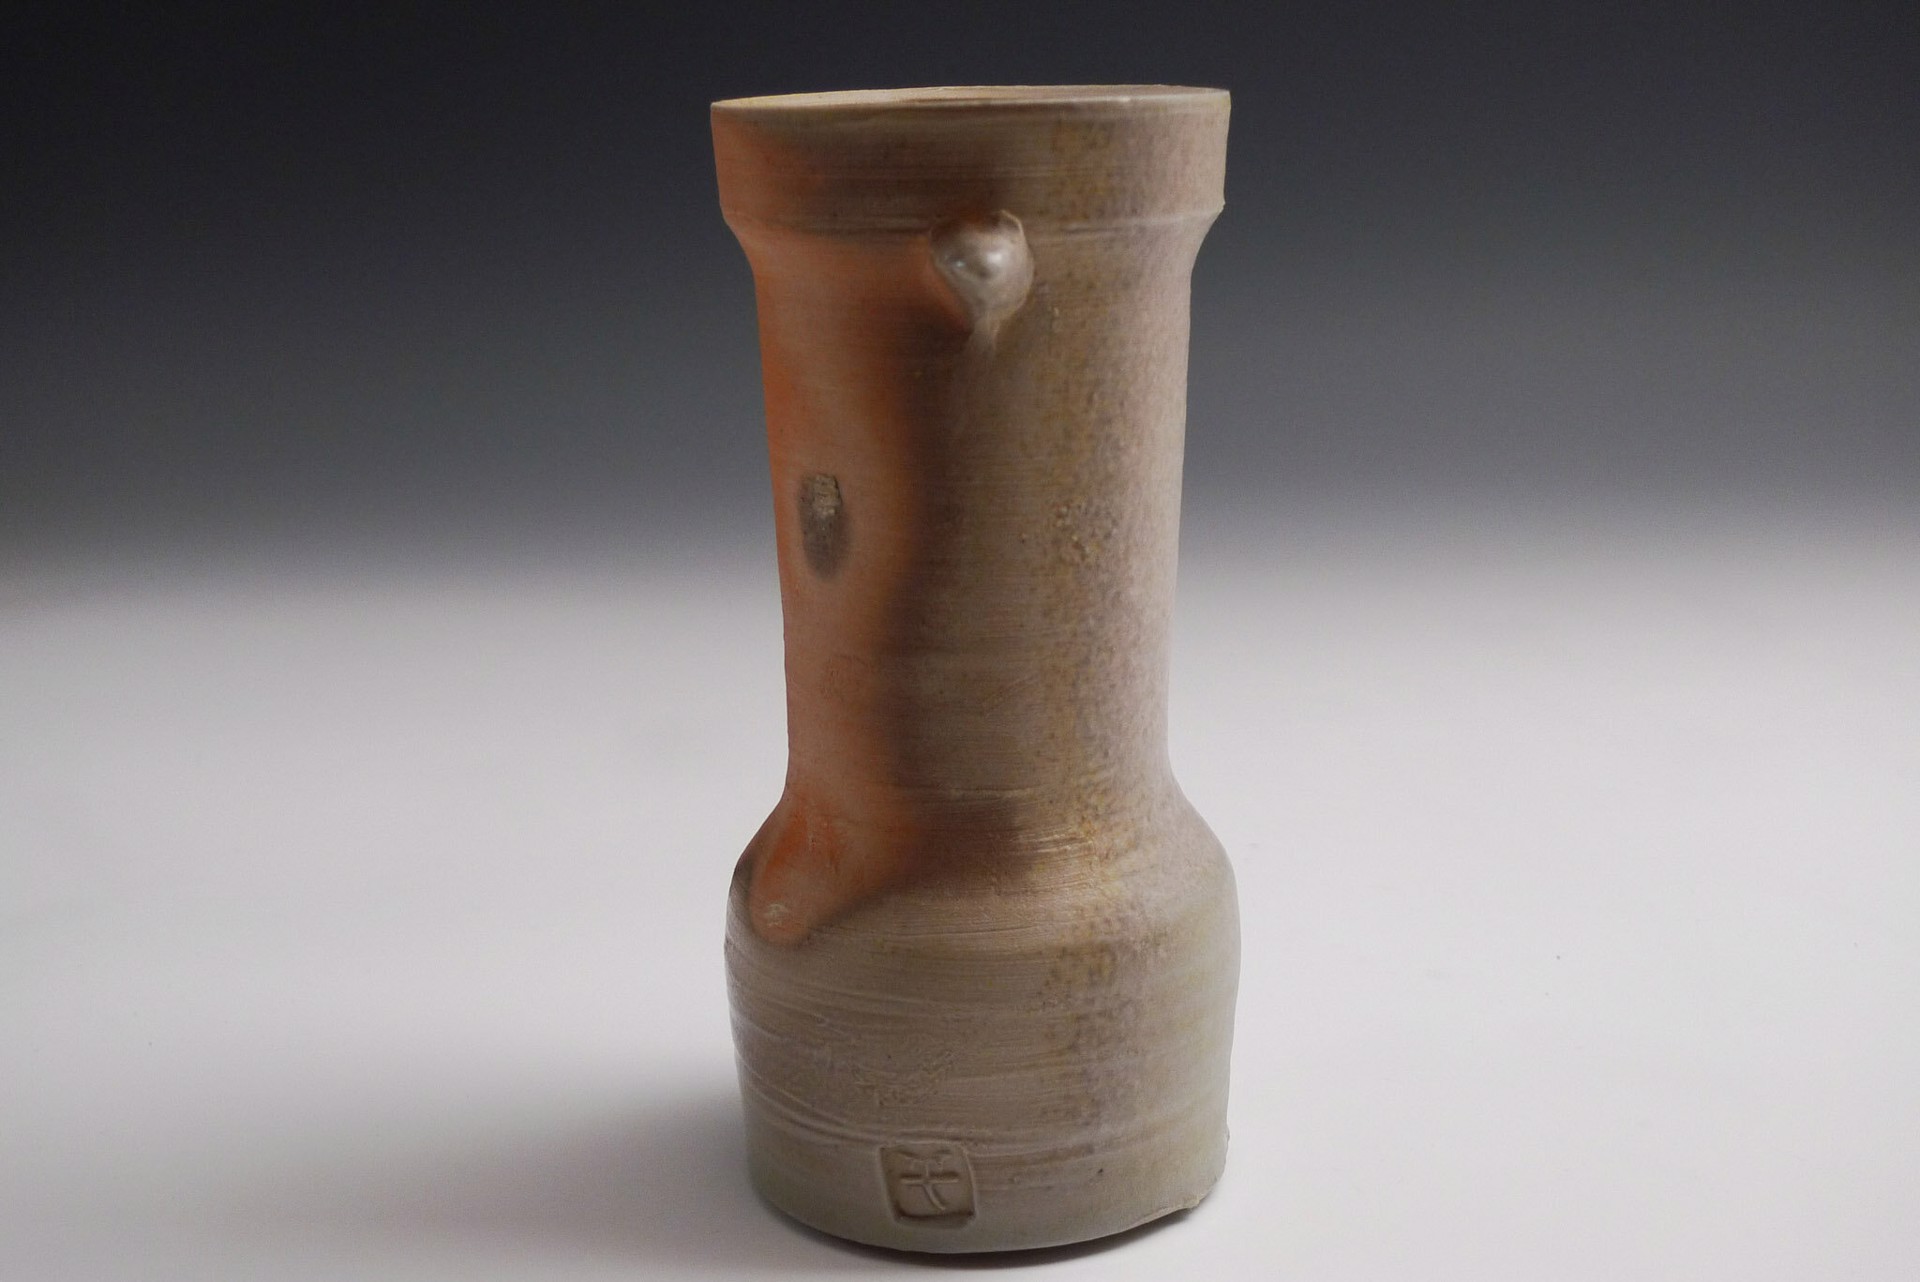 Vase by Shumpei Yamaki